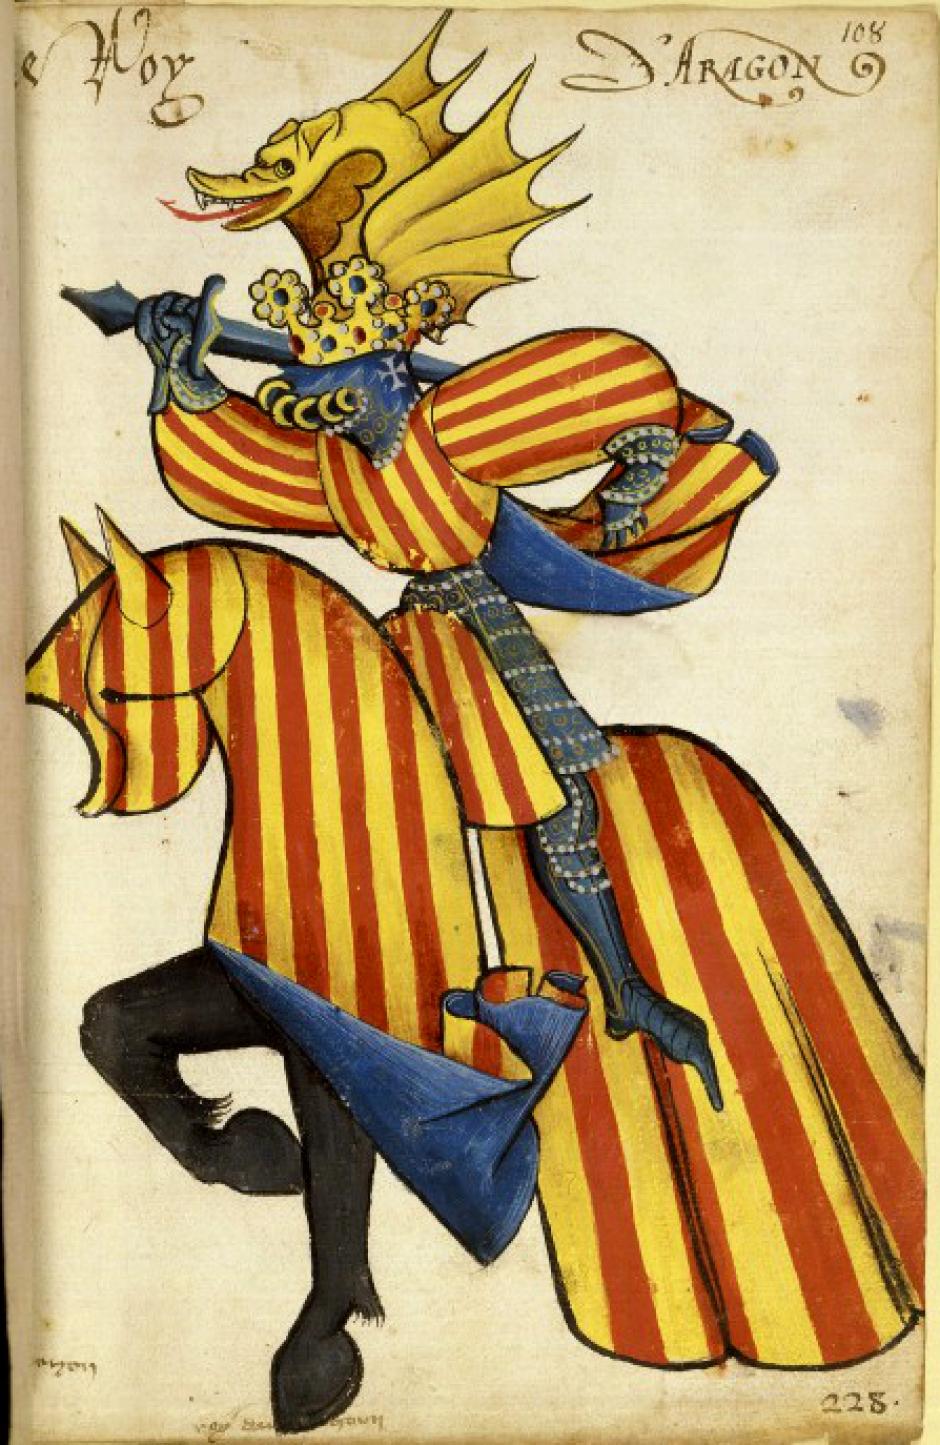 Representación heráldica ecuestre del Rey de Aragón en el Armorial ecuestre del Toison de Oro, 1433-1435